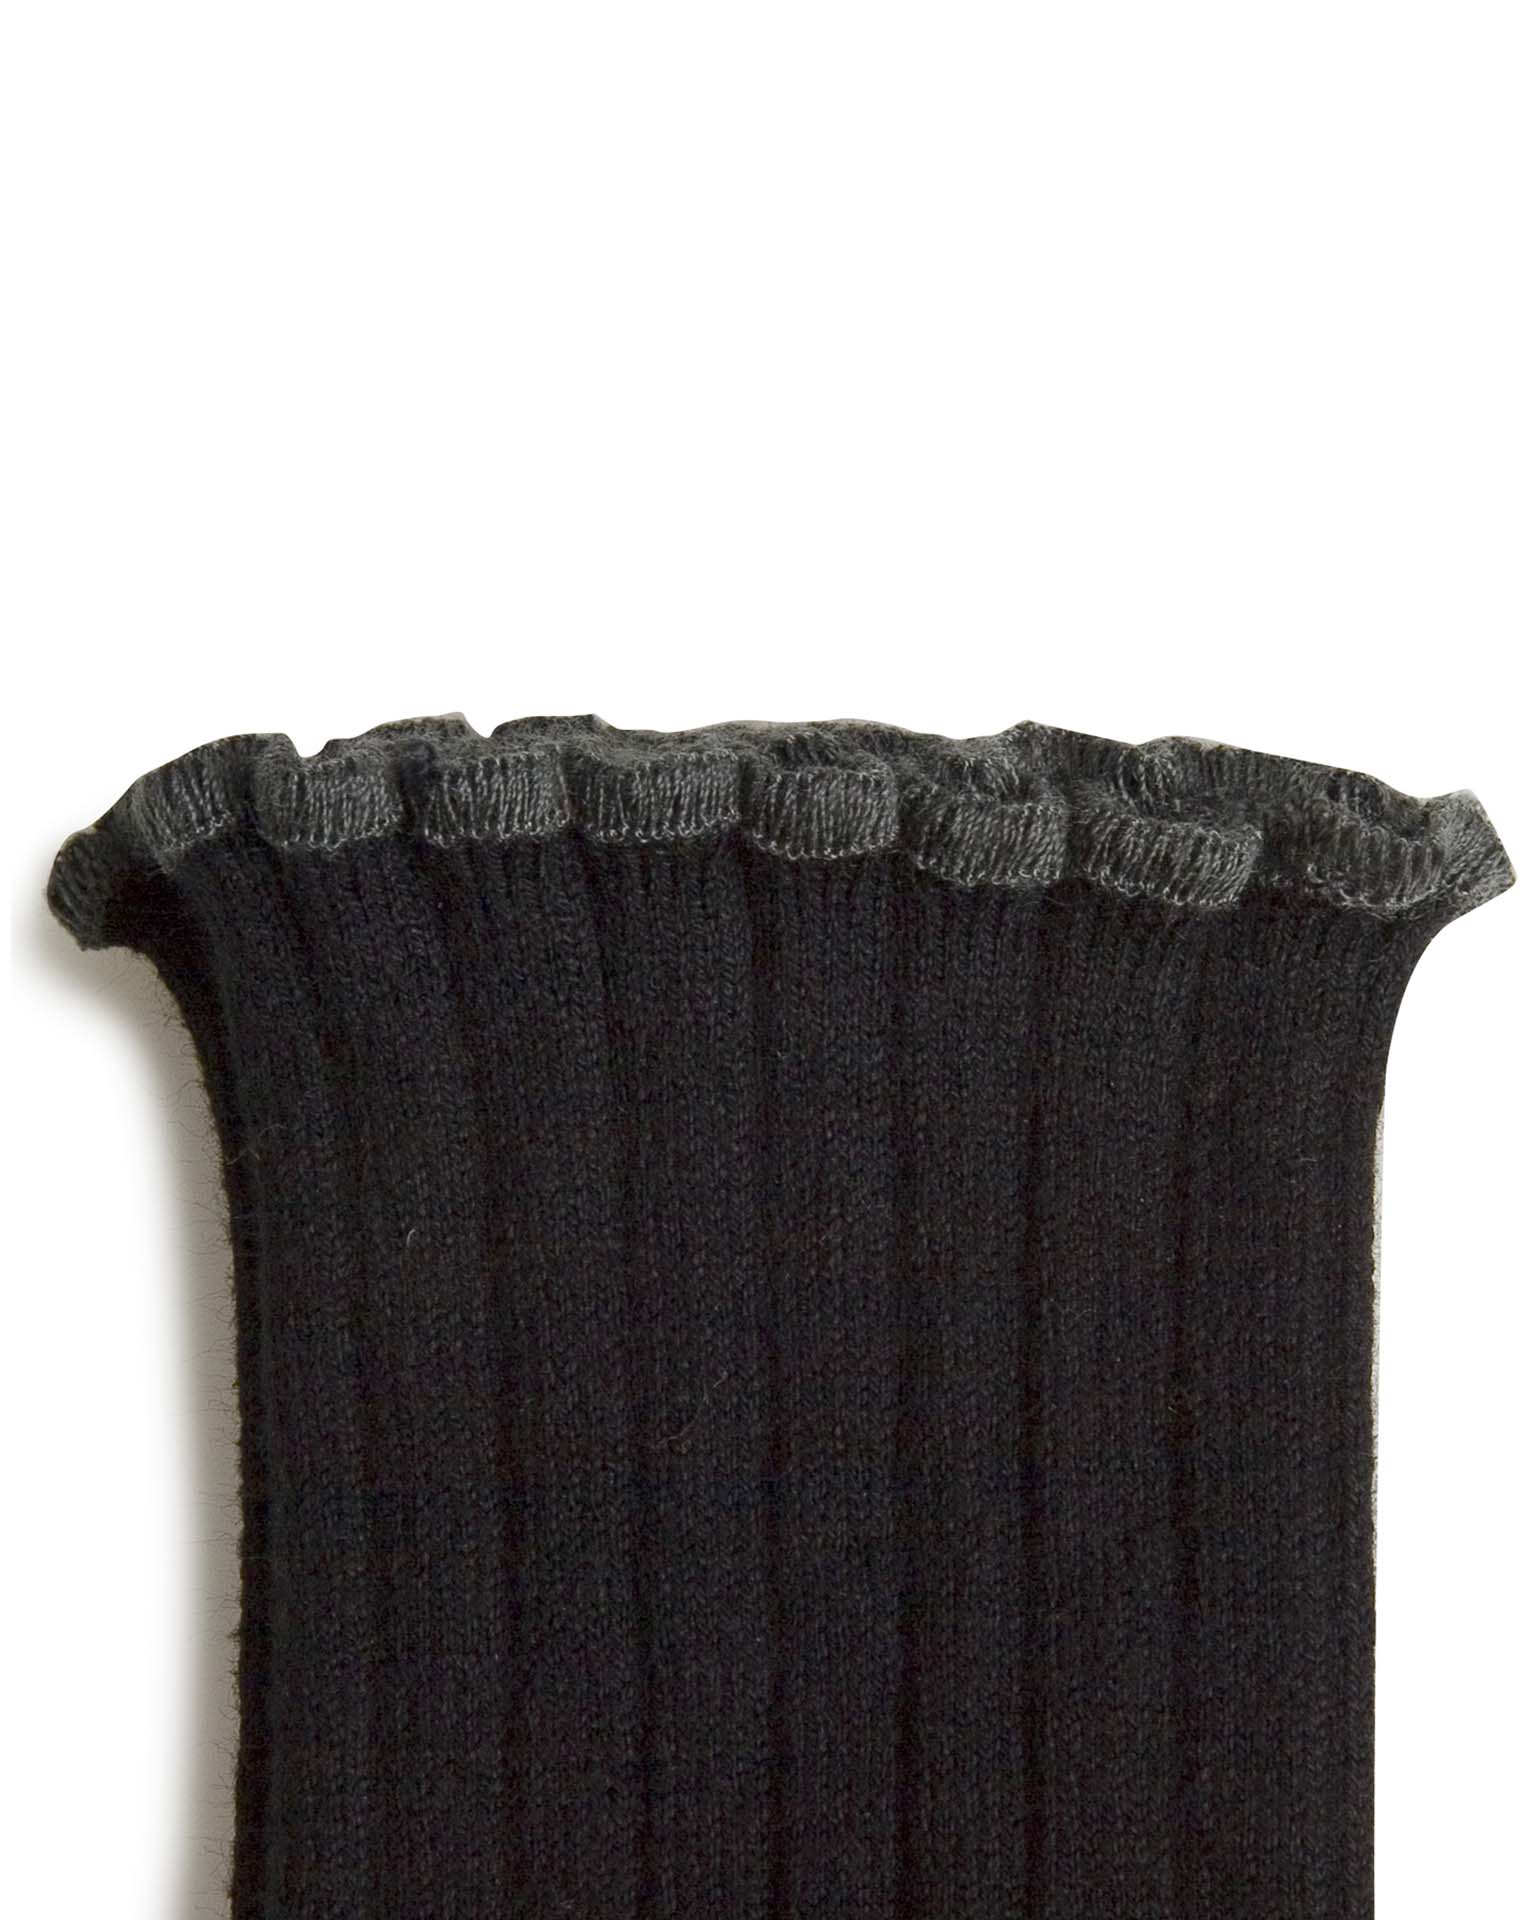 Little collégien accessories delphine ankle socks in noir de charbon